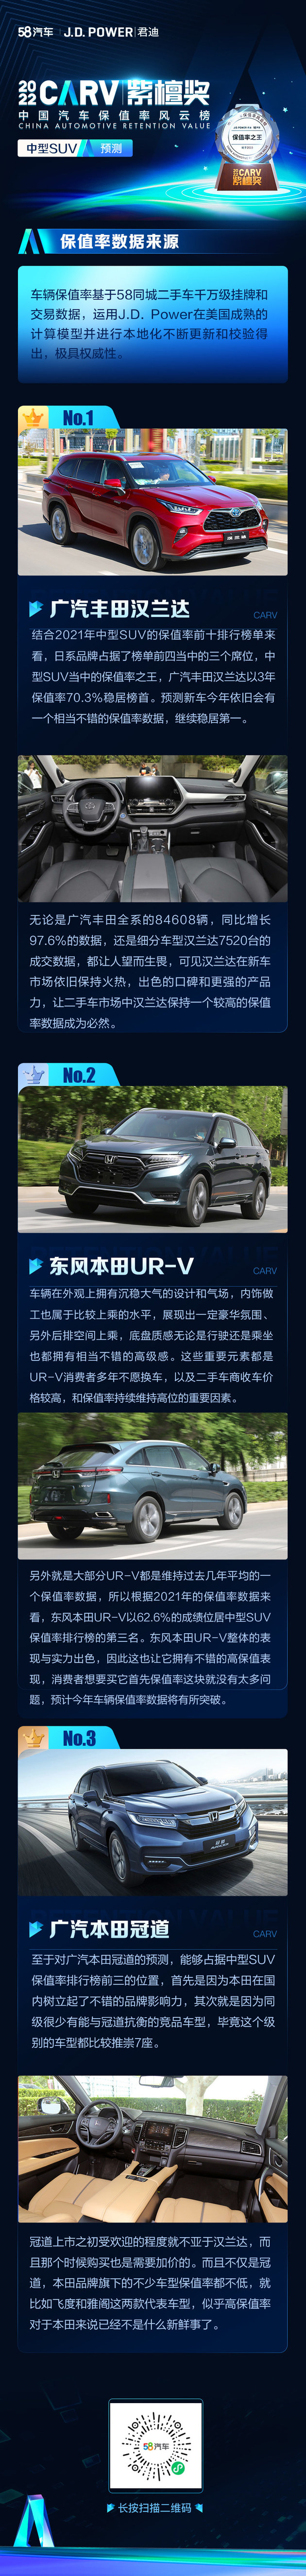 2022保值率风云榜中型SUV预测 东风本田UR-V前三稳了